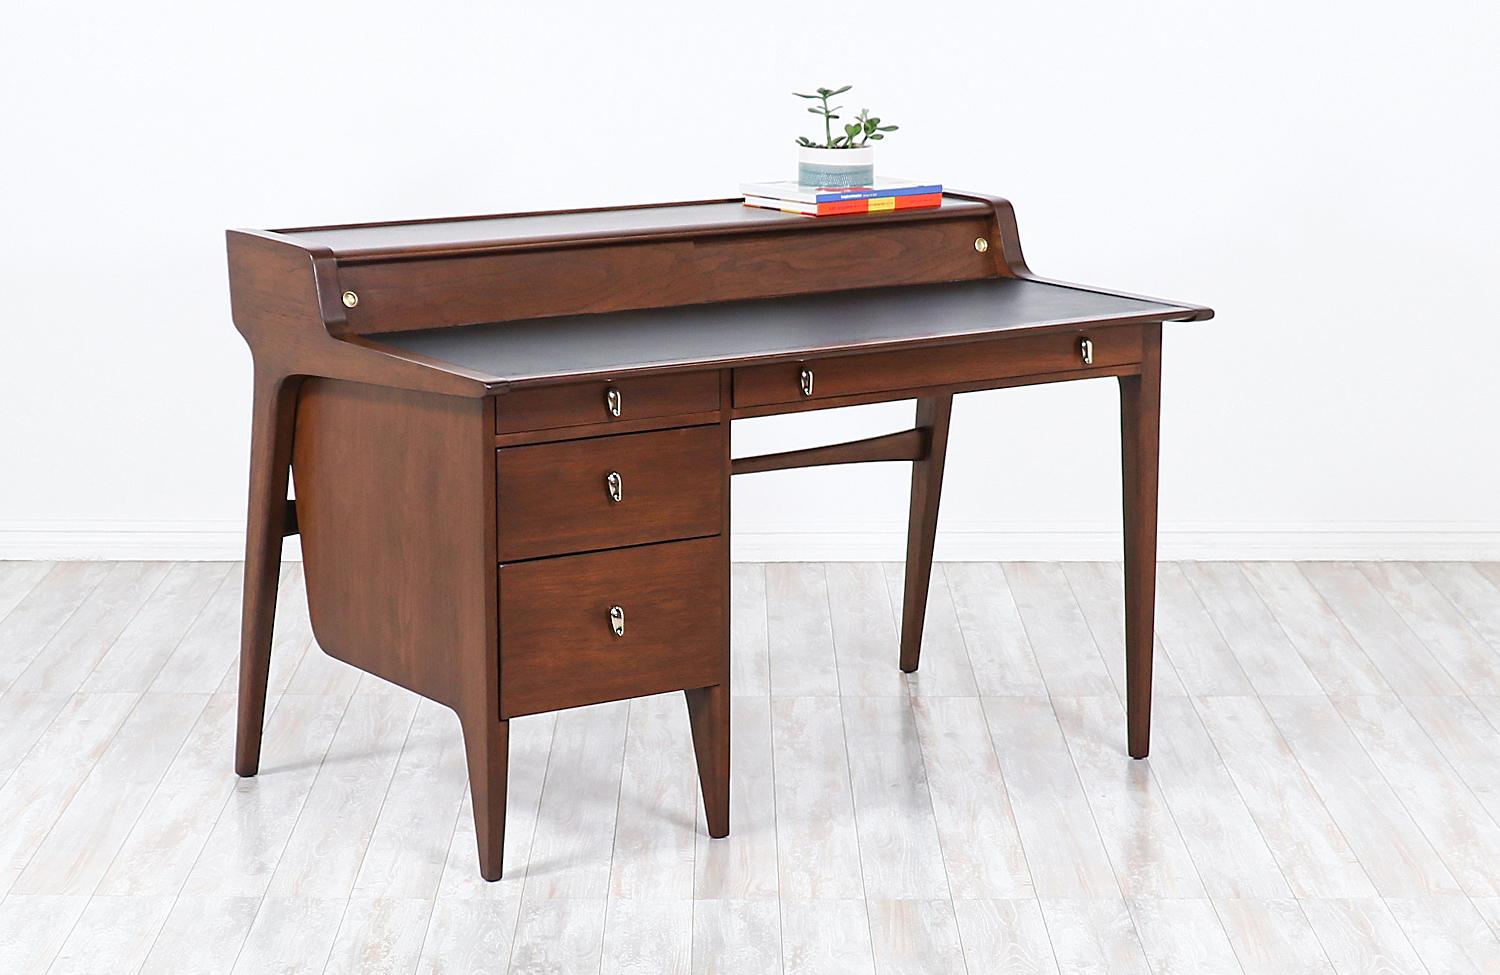 A stunning modern desk designed by John Van Koert in collaboration for Drexel's 